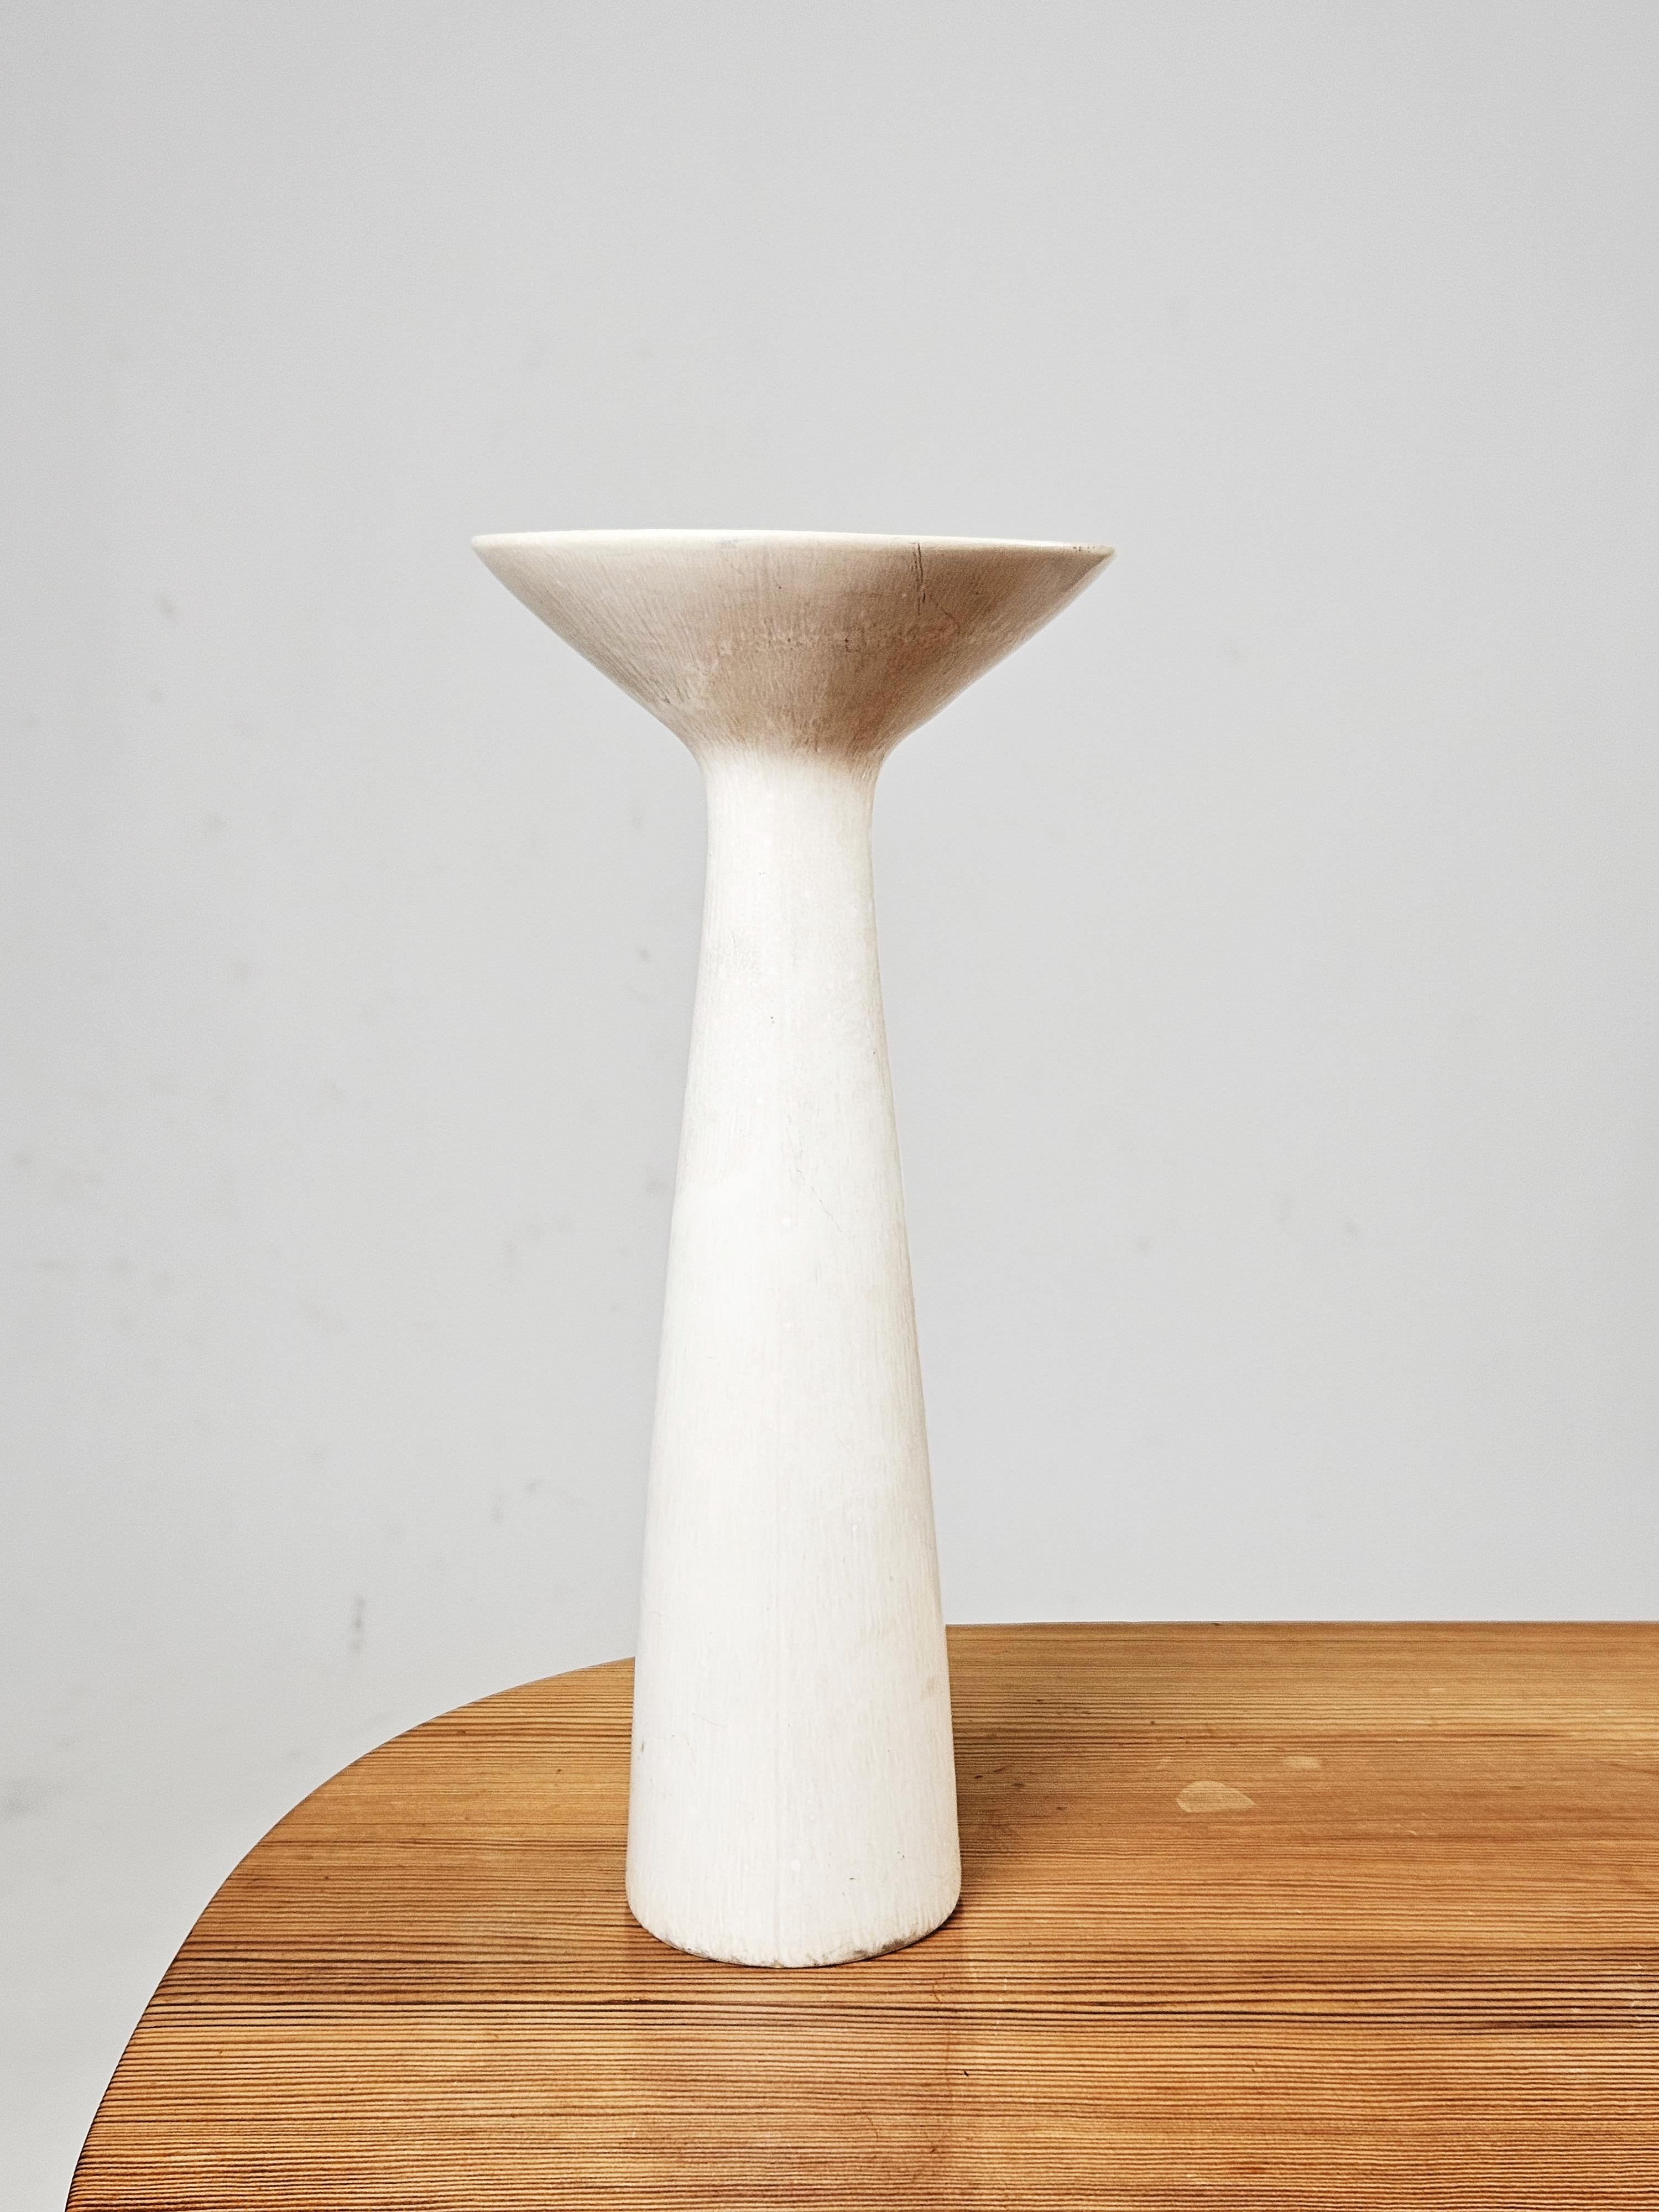 Magnifique vase en grès blanc conçu par Carl-Harry Stålhane pour Rörstrand, Suède, années 1960. 

S'accorde parfaitement avec d'autres objets The Modern Scandinavian de cette période. 

Modèle rare avec glaçure blanche très recherchée.

Quelques